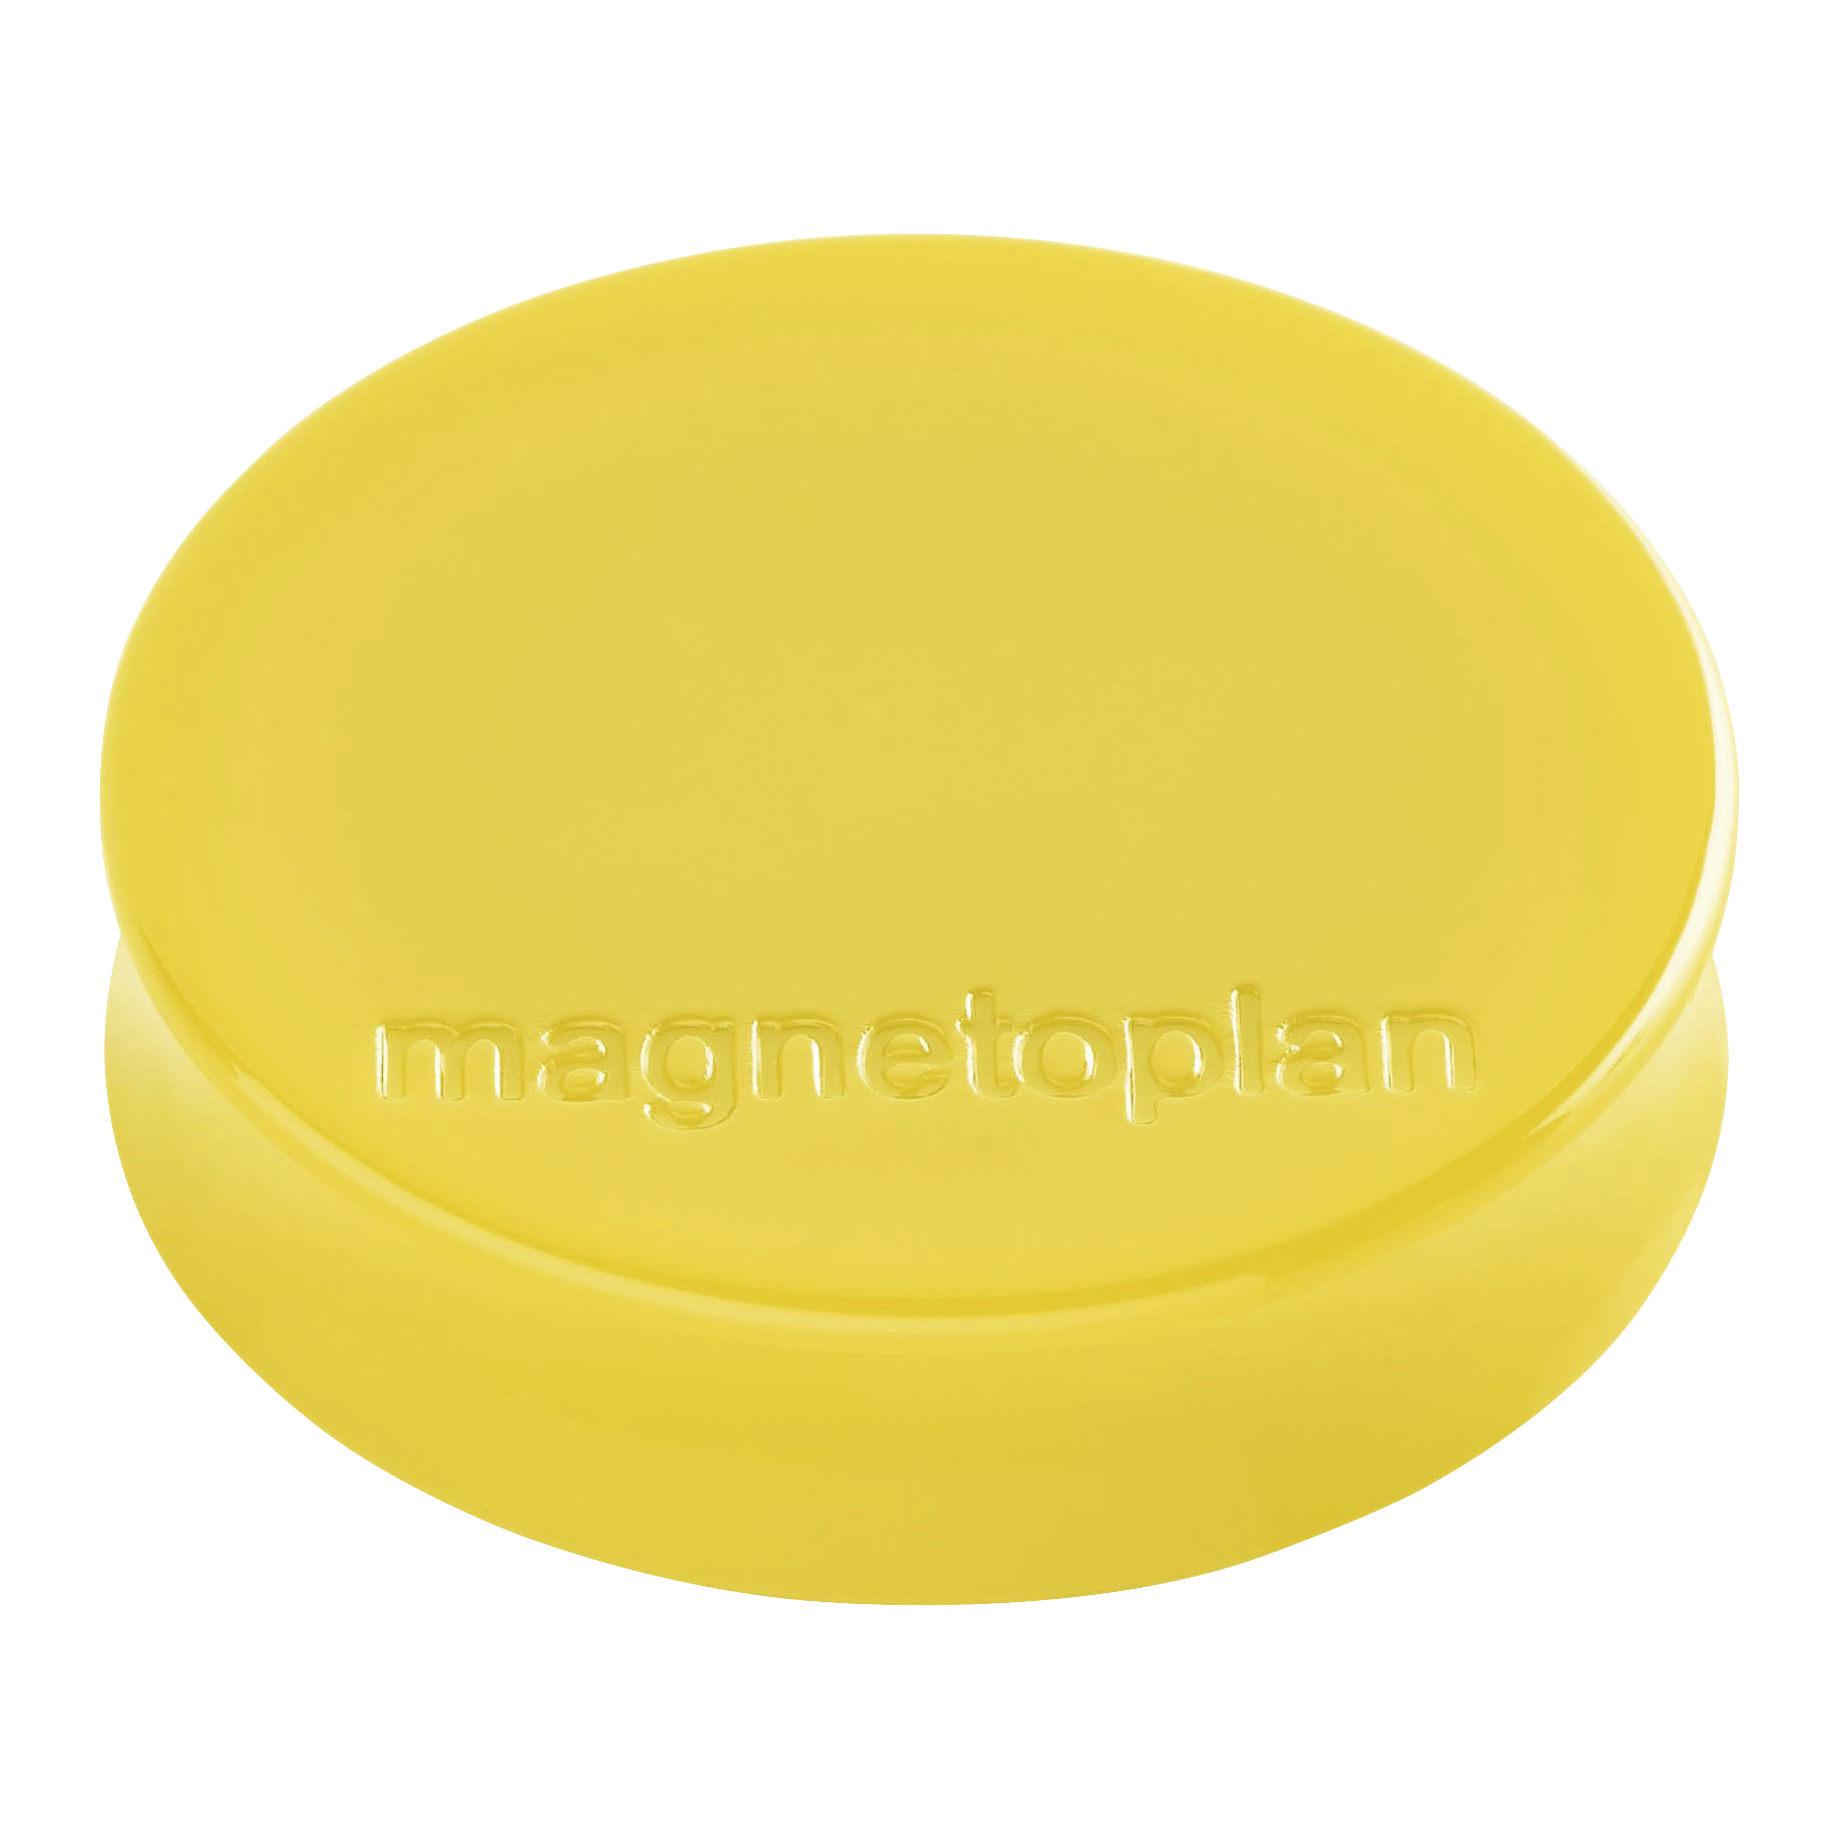 Magnet Ergo Medium